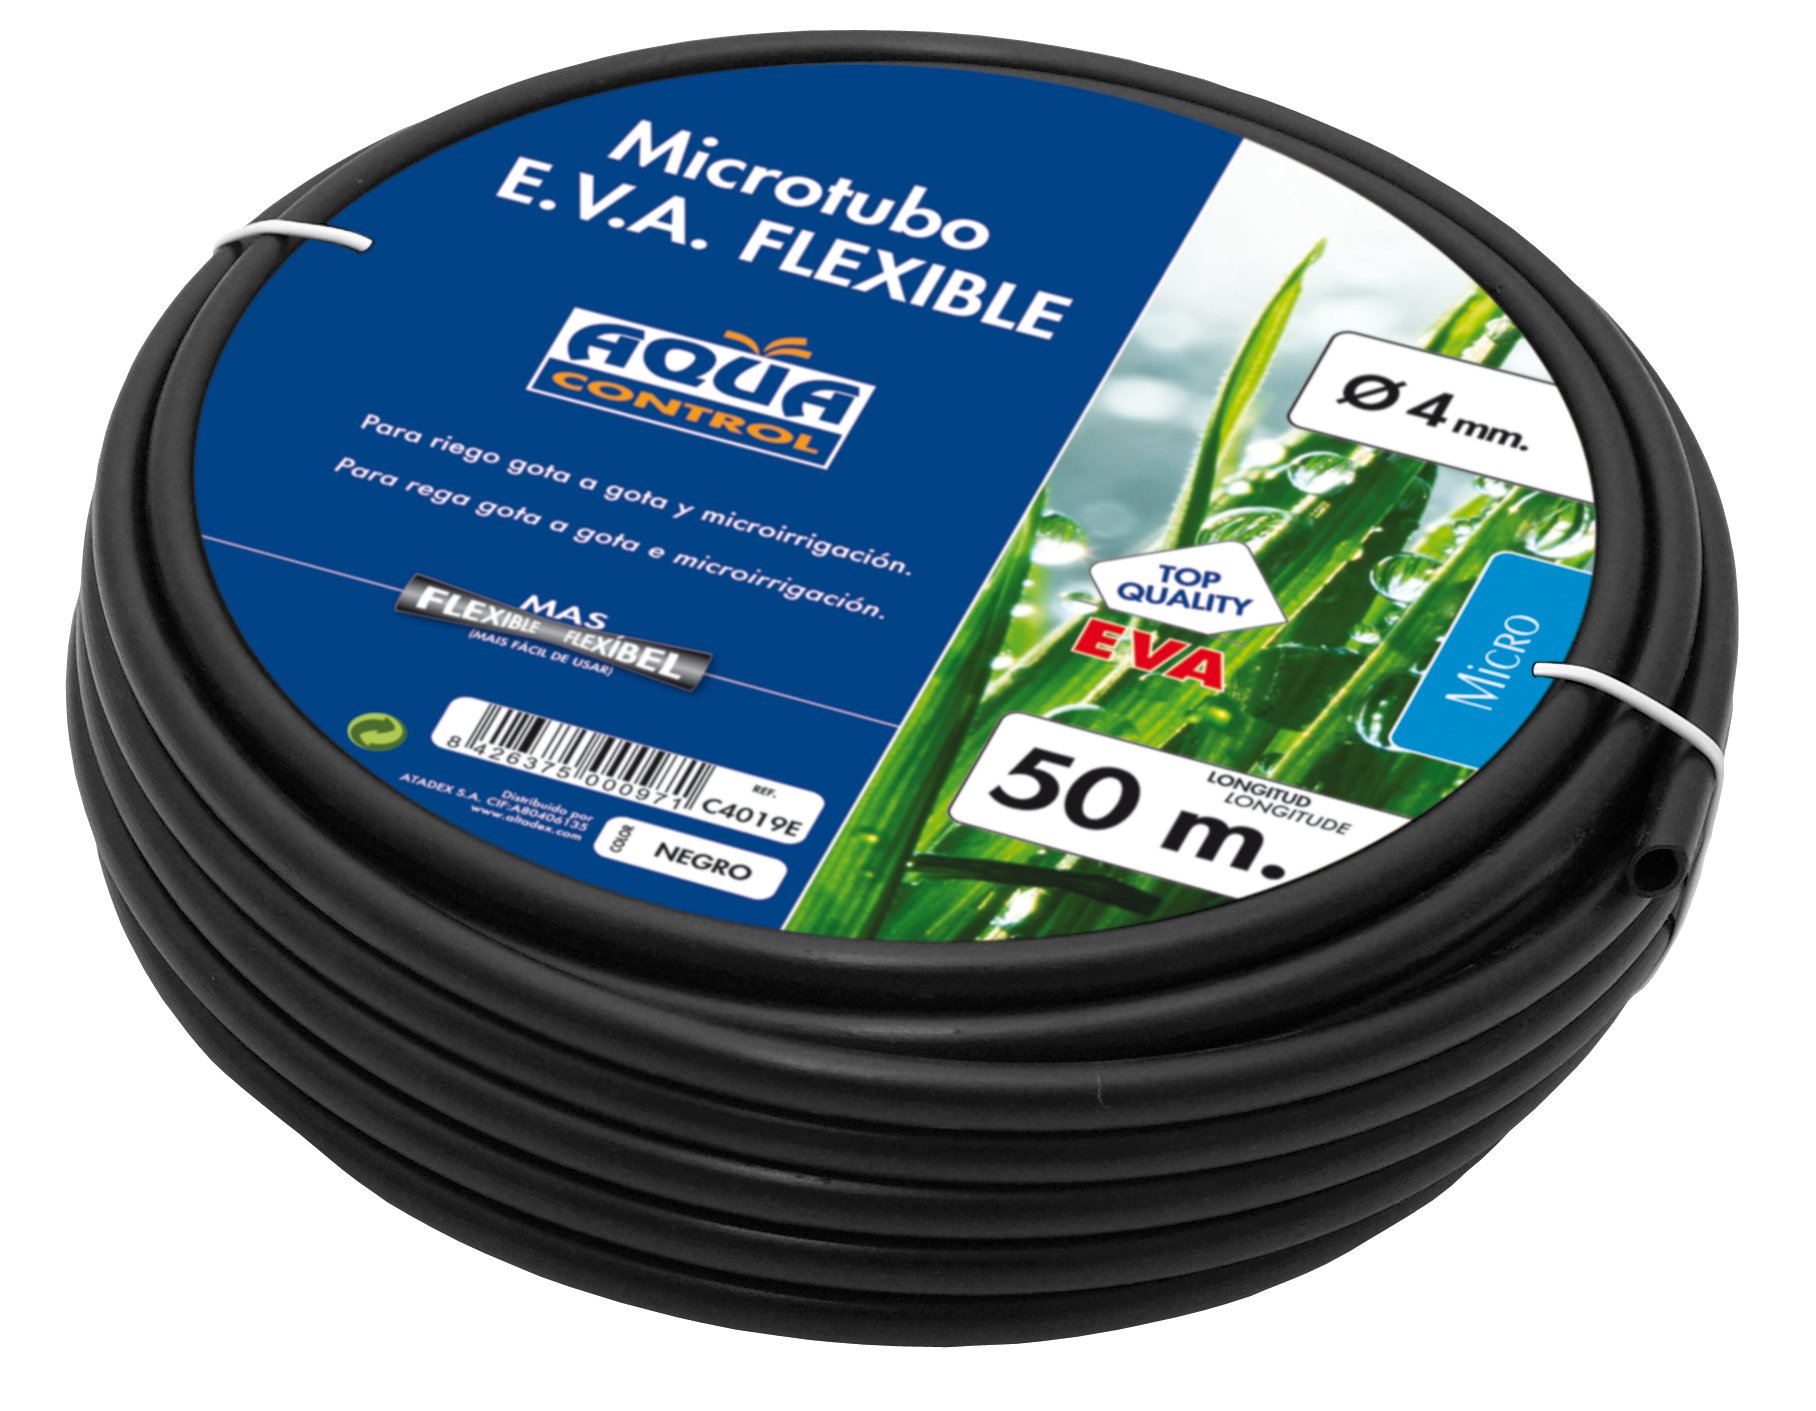 microtubo Flexible ï 4 mm/50 schwarz